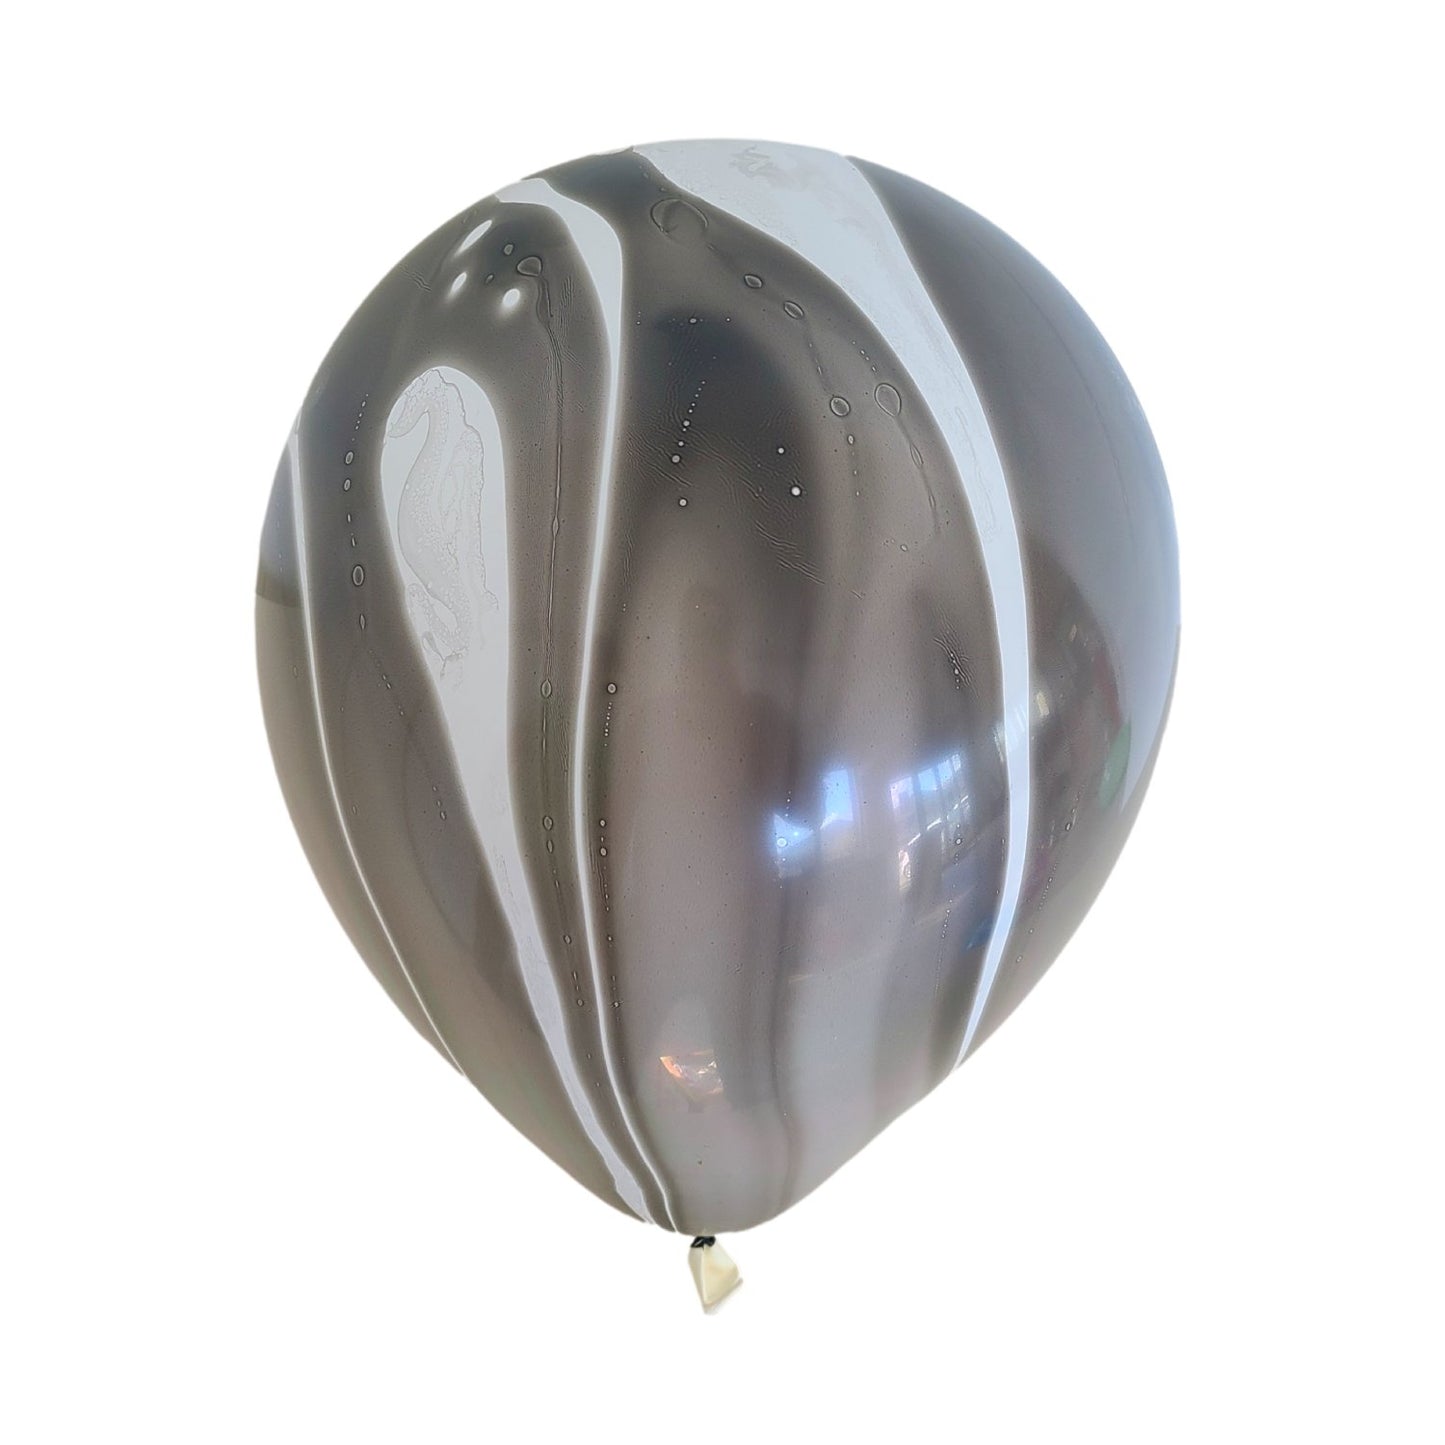 Marmer Ballonnen - Zwart (10 stuks / 30 CM)